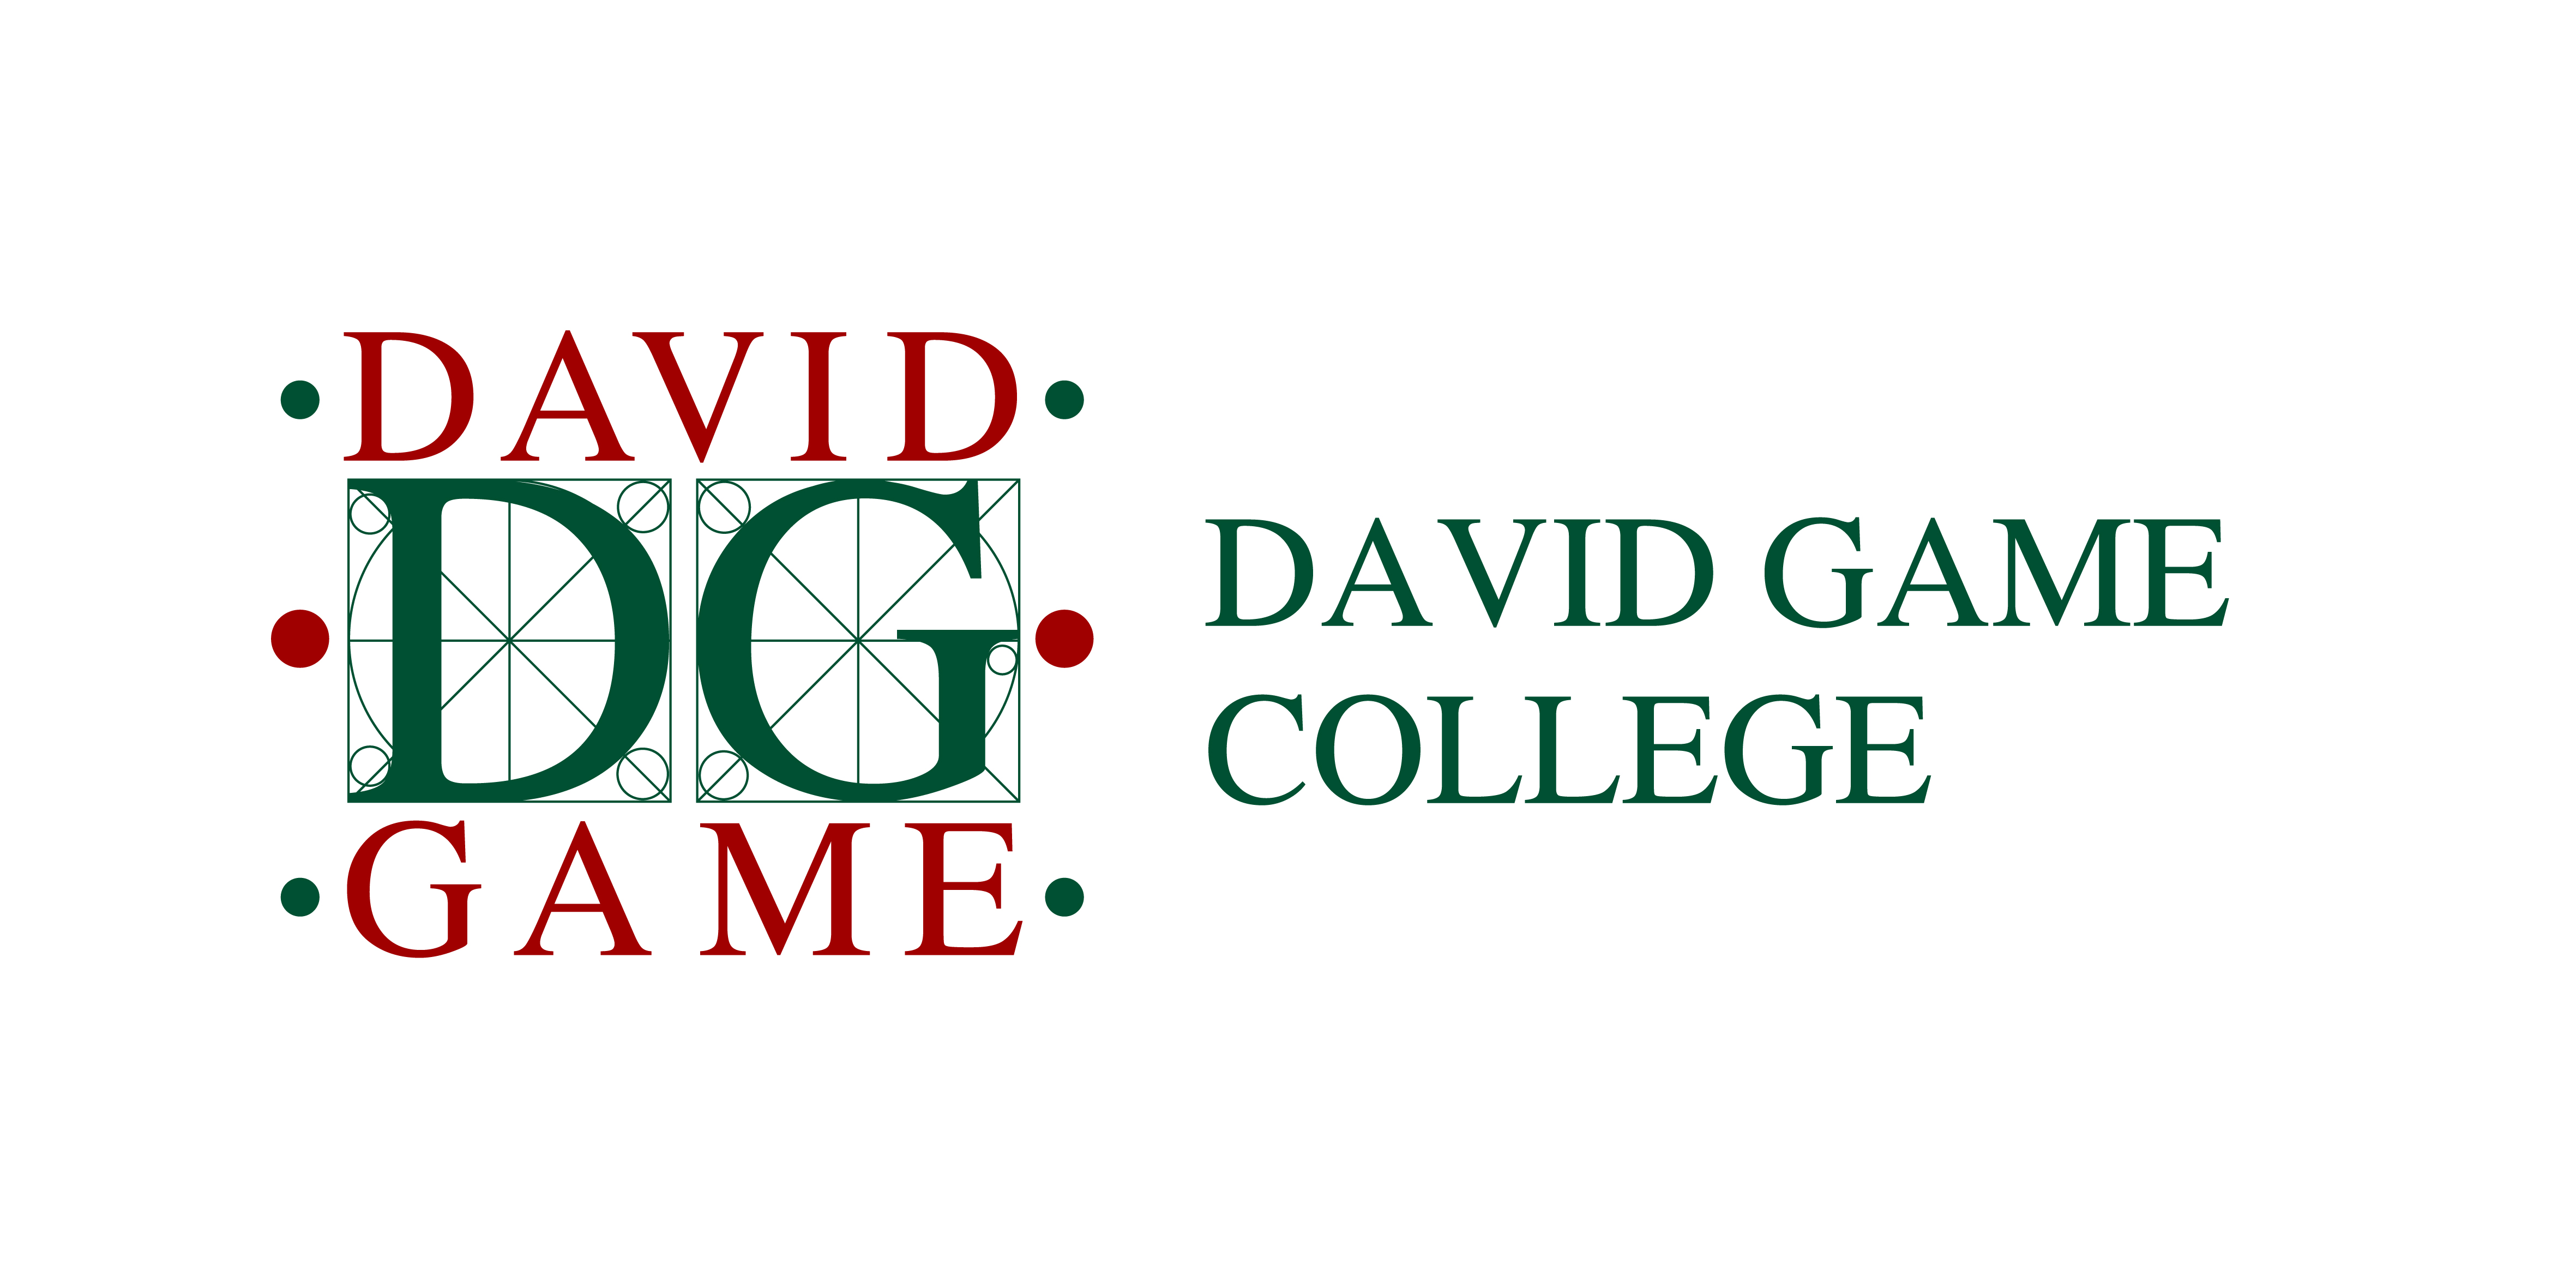 بررسی وضعیت دانش آموزان کالج DAVID GAME از طریق پورتال اینترنت توسط والدین